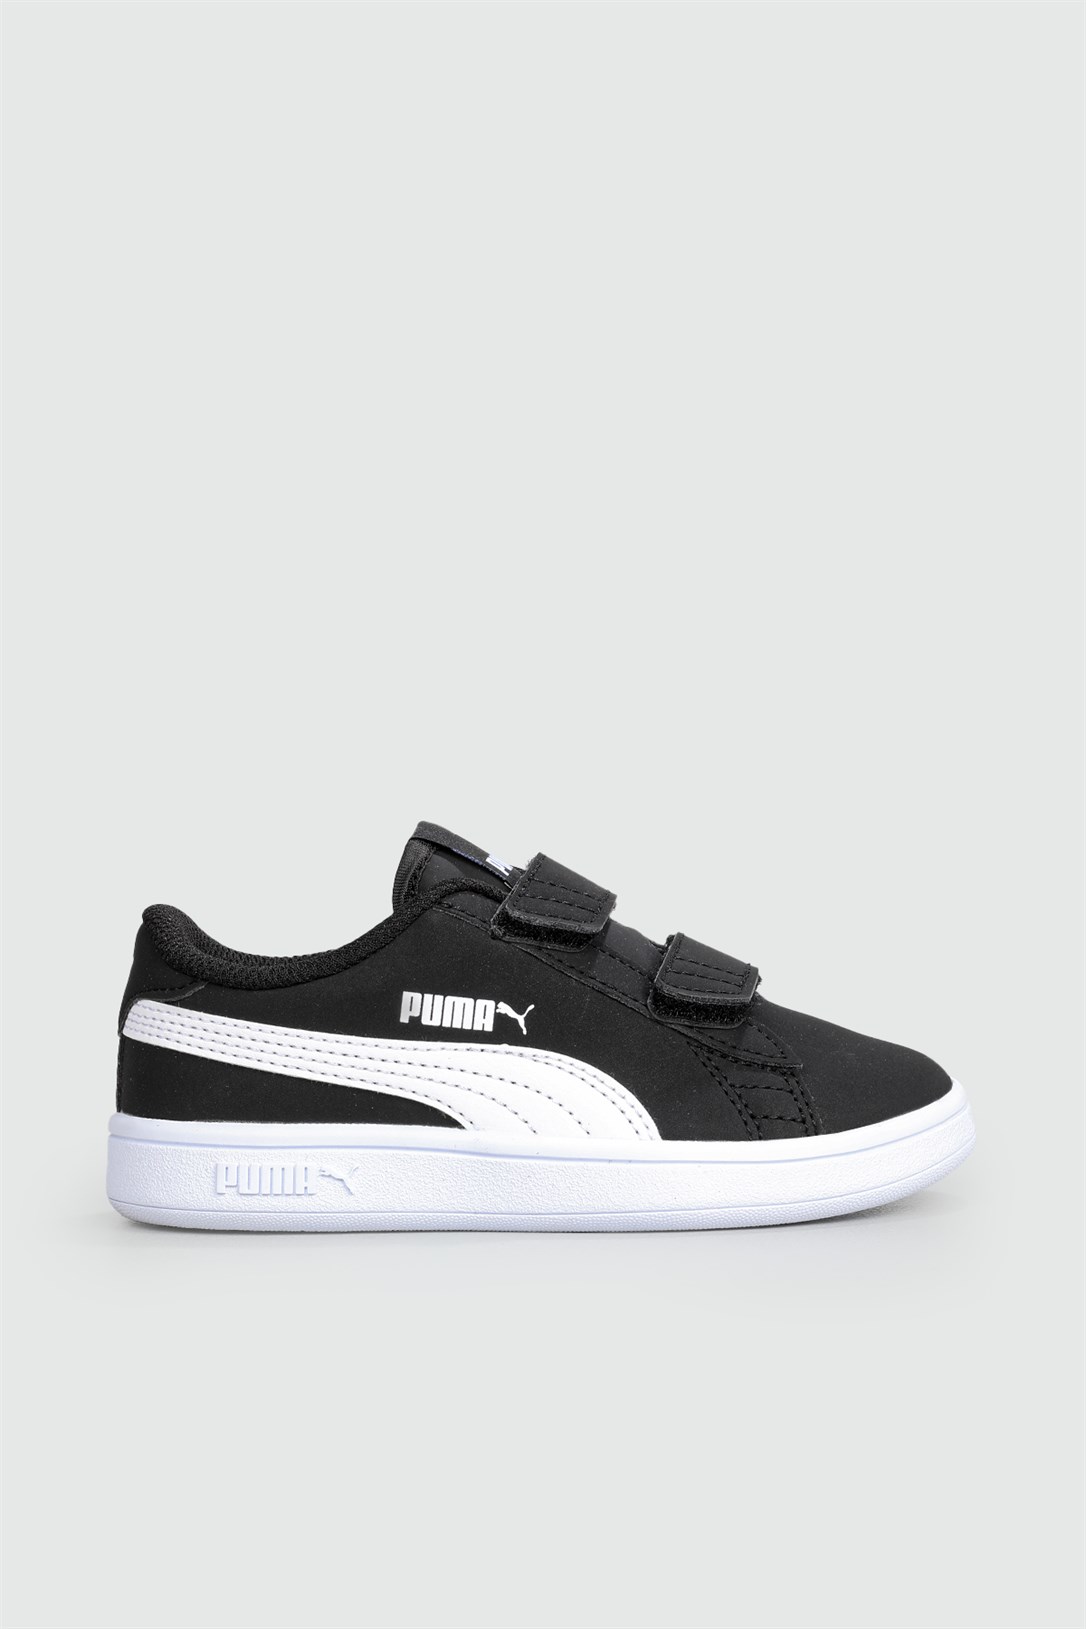 Puma Günlük Rahat Siyah Beyaz Çocuk Spor Ayakkabı 365183-34 | Ayakkabı City